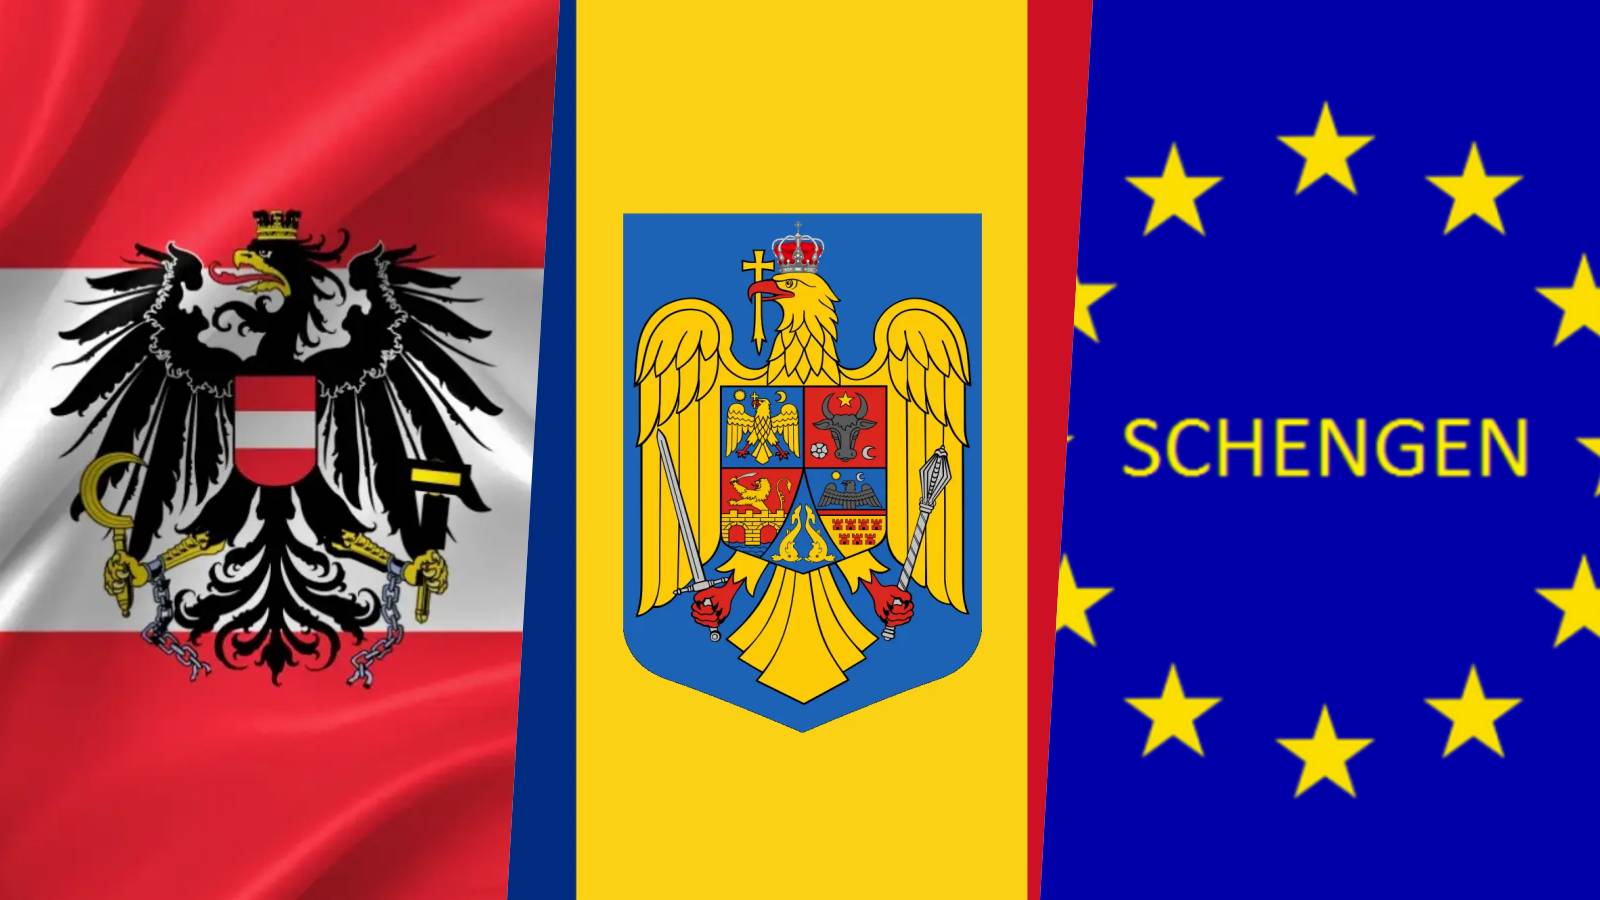 Austria Karl Nehammer Catturato MENTRE BLOCCATO l'adesione della Romania a Schengen